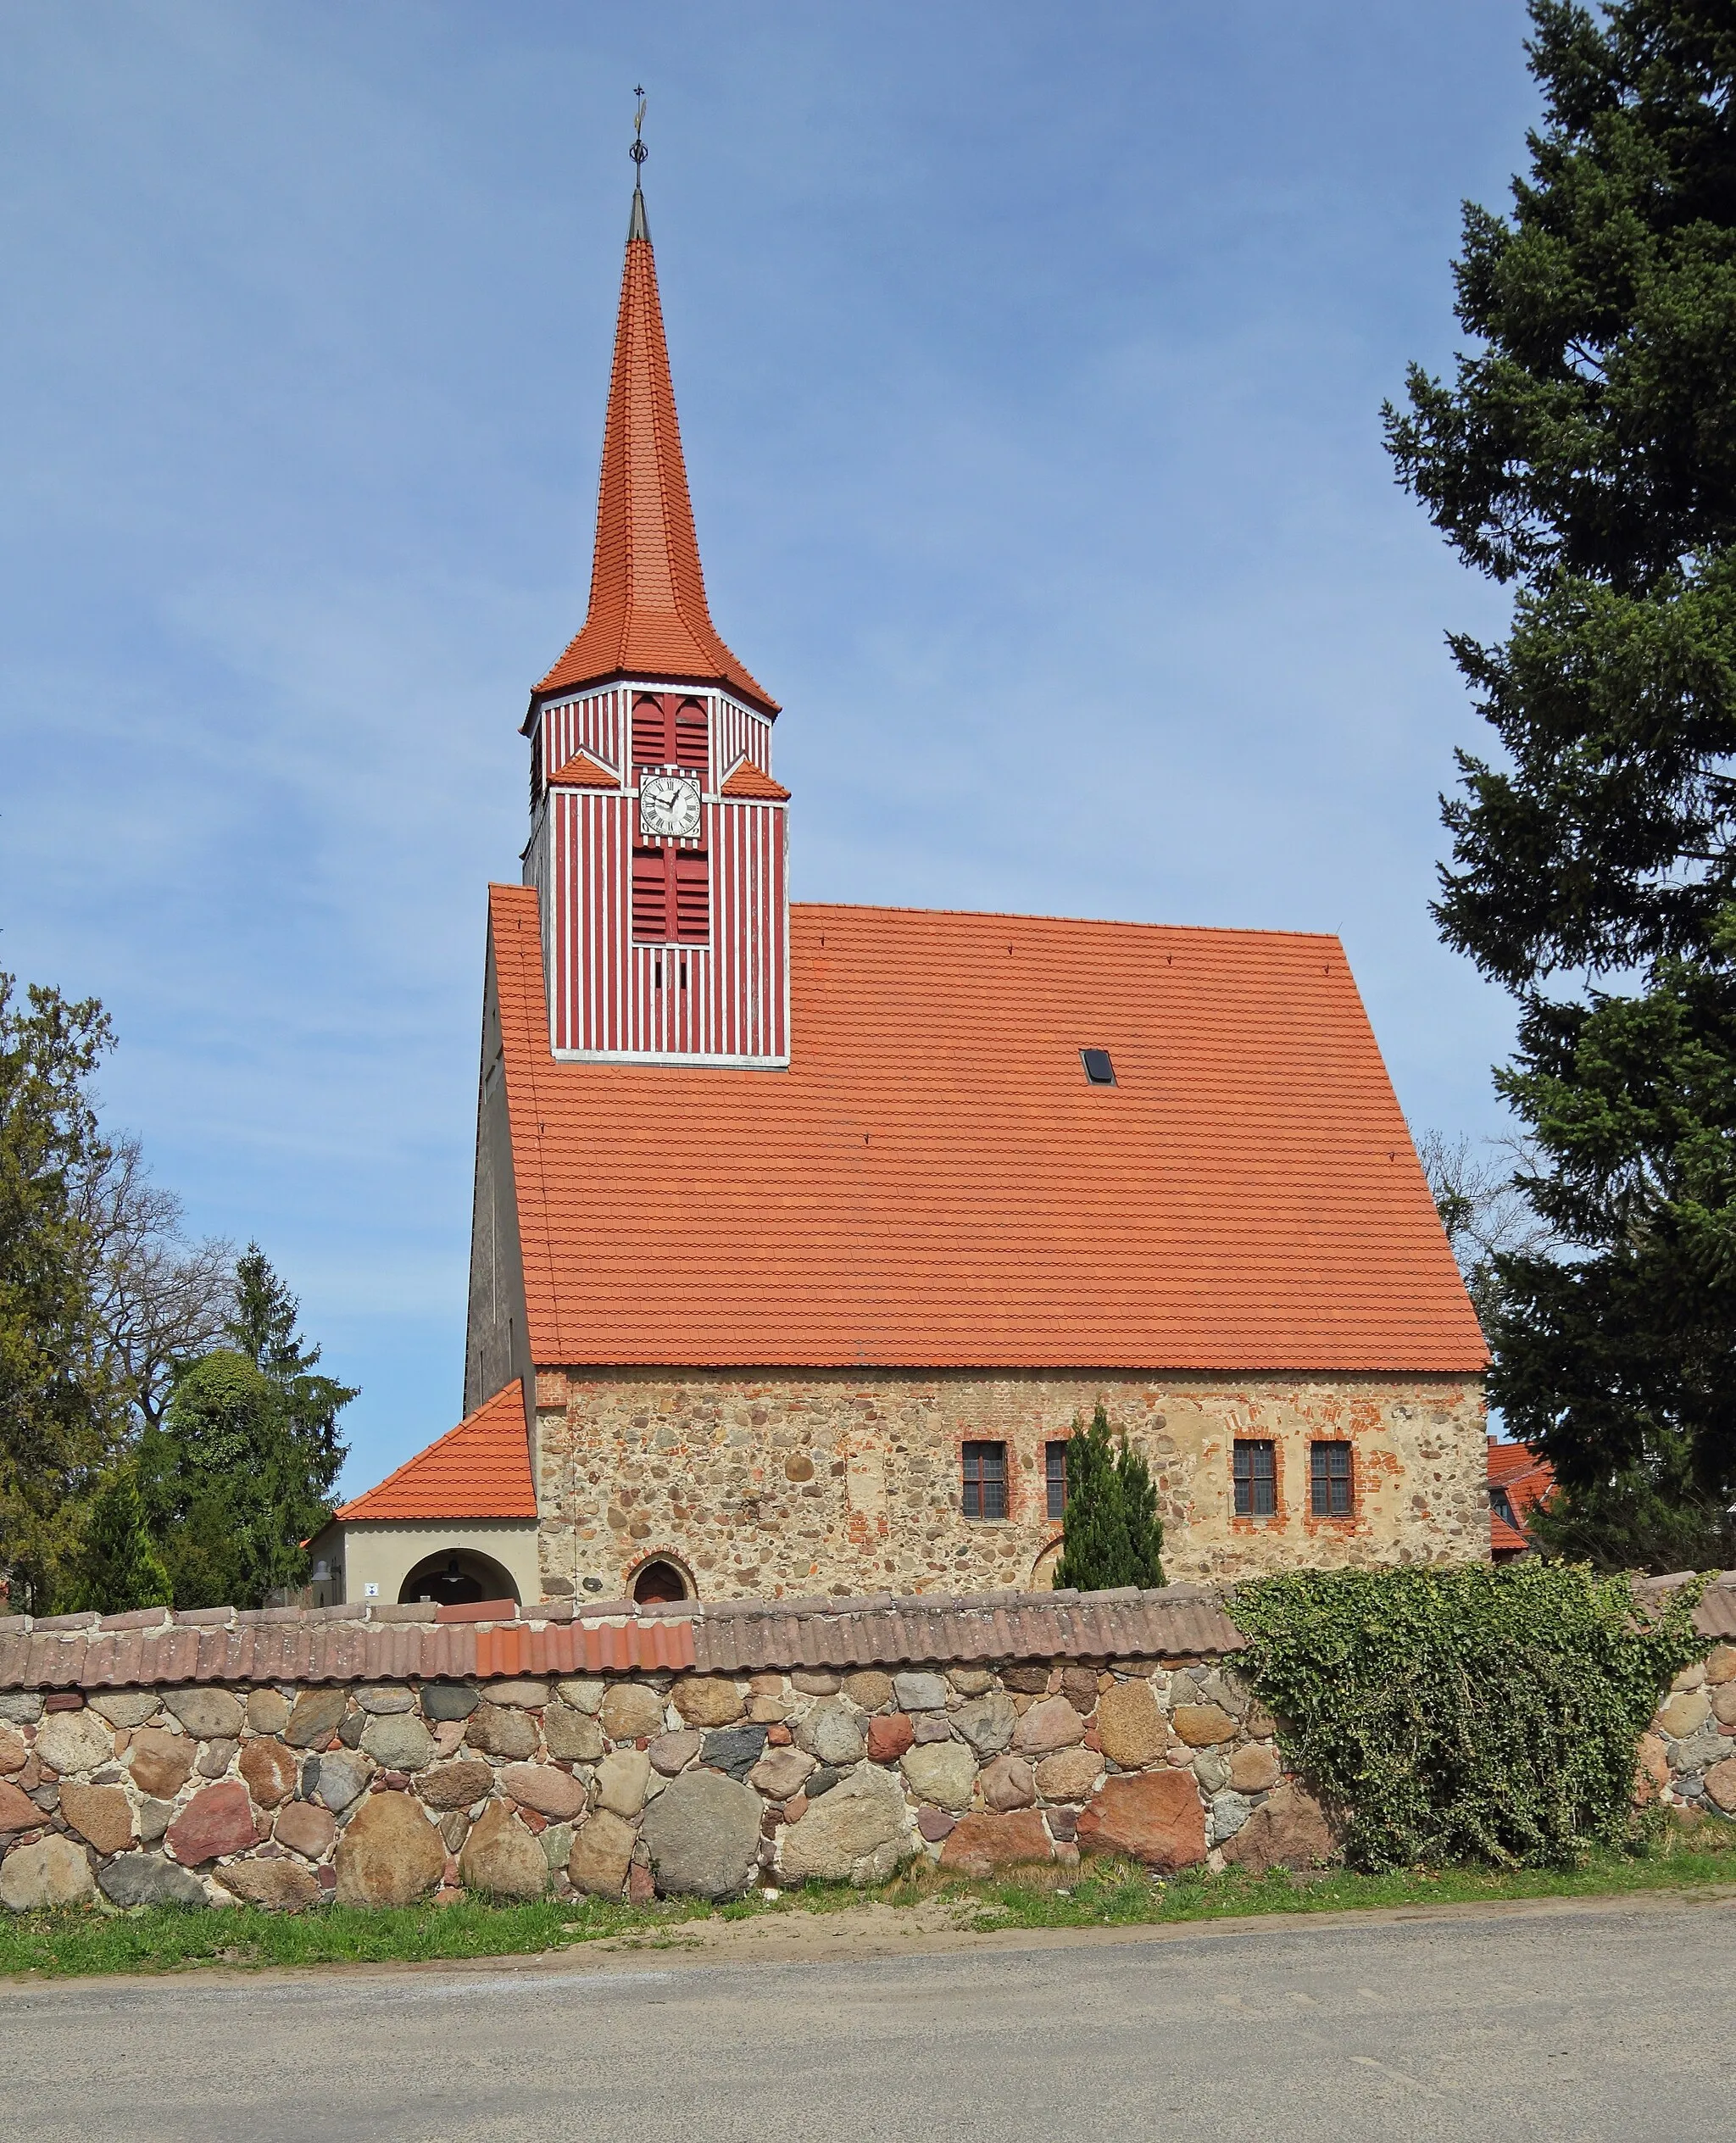 Photo showing: Village church in Demnitz (Steinhöfel), Brandenburg, Germany